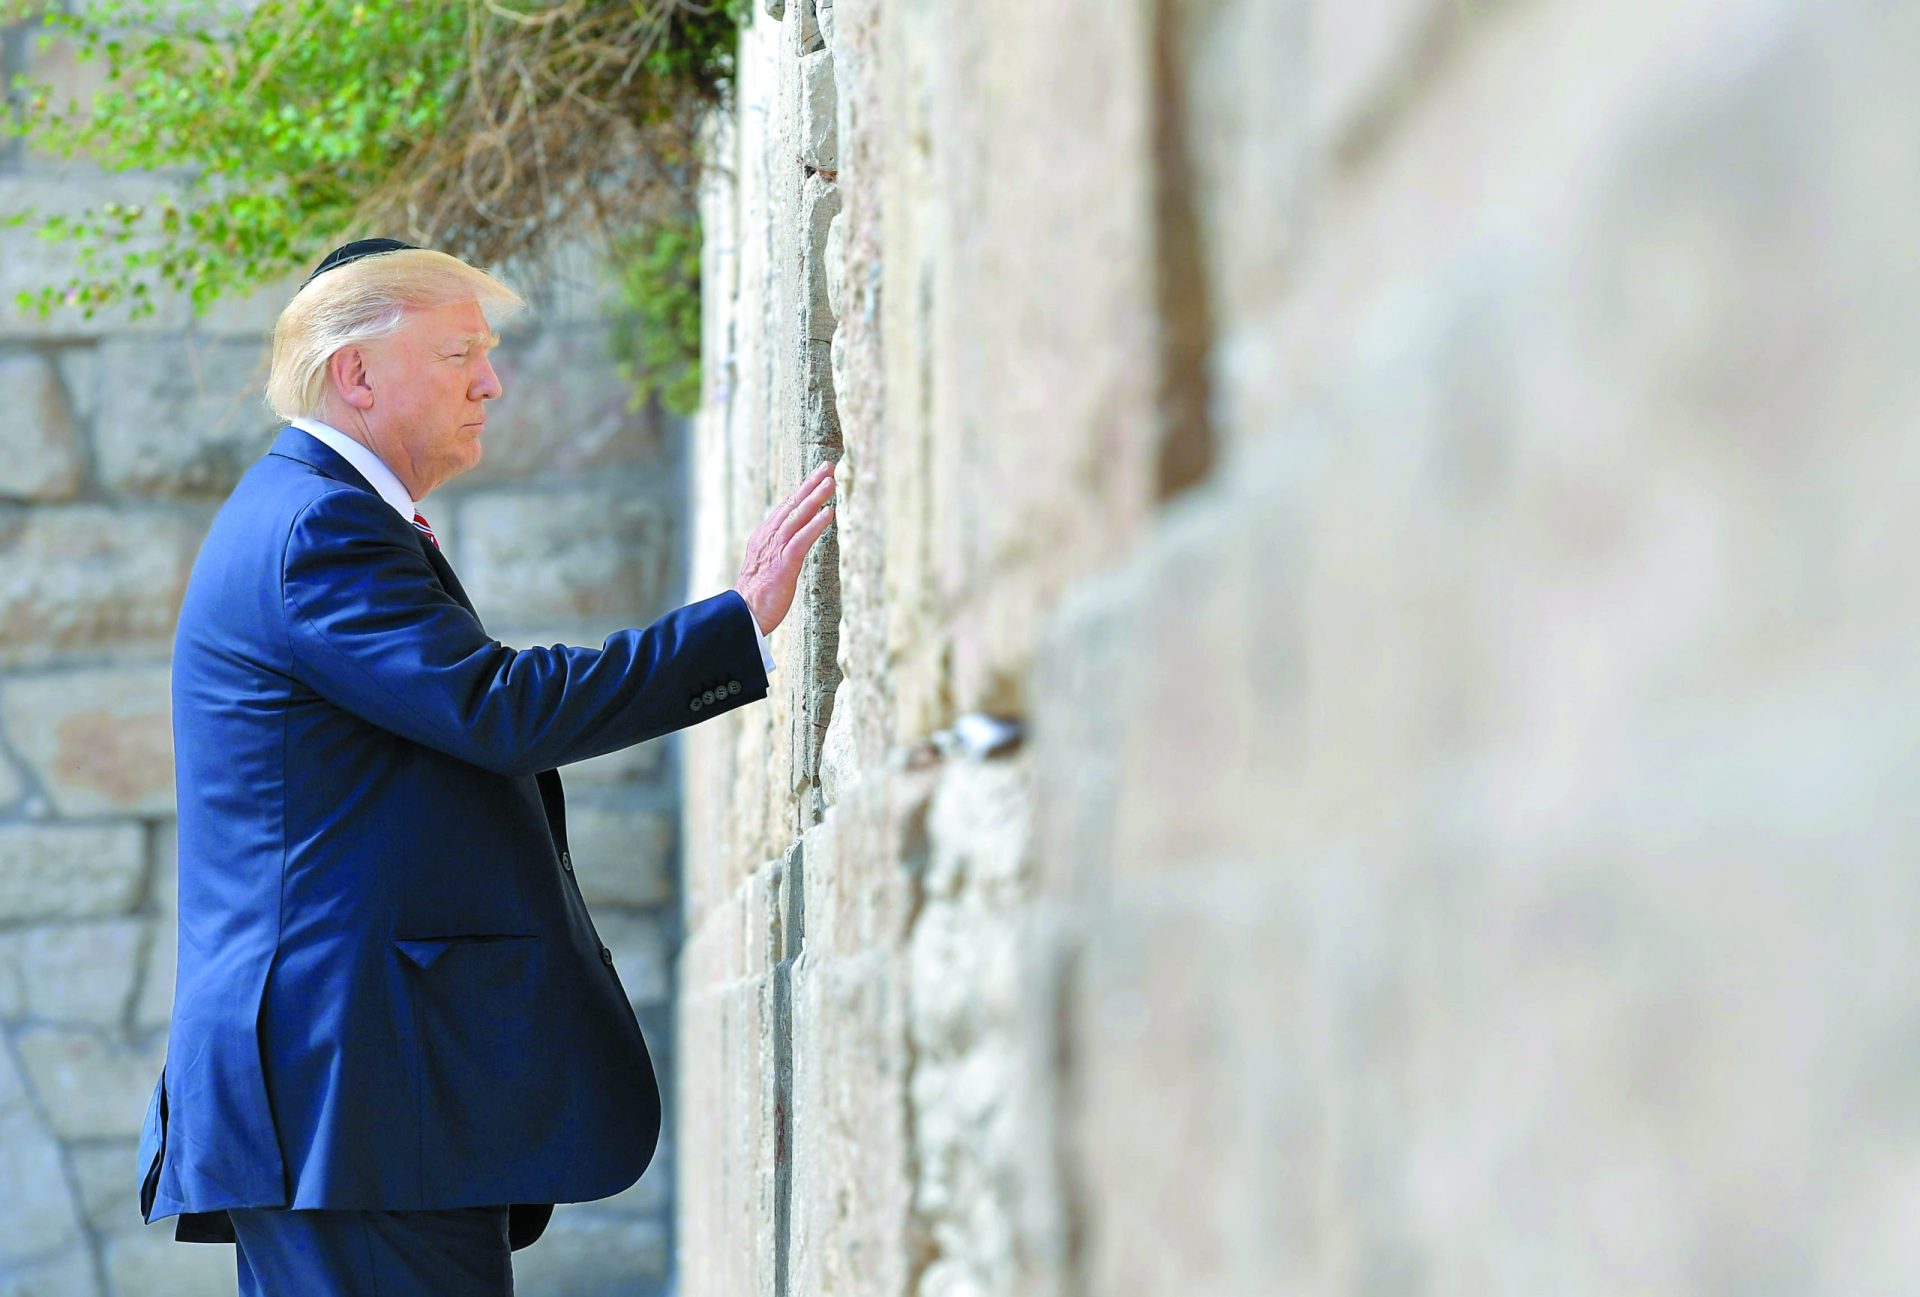 Jerusalém. Trump inclinado a presentear Israel com a desejada capital